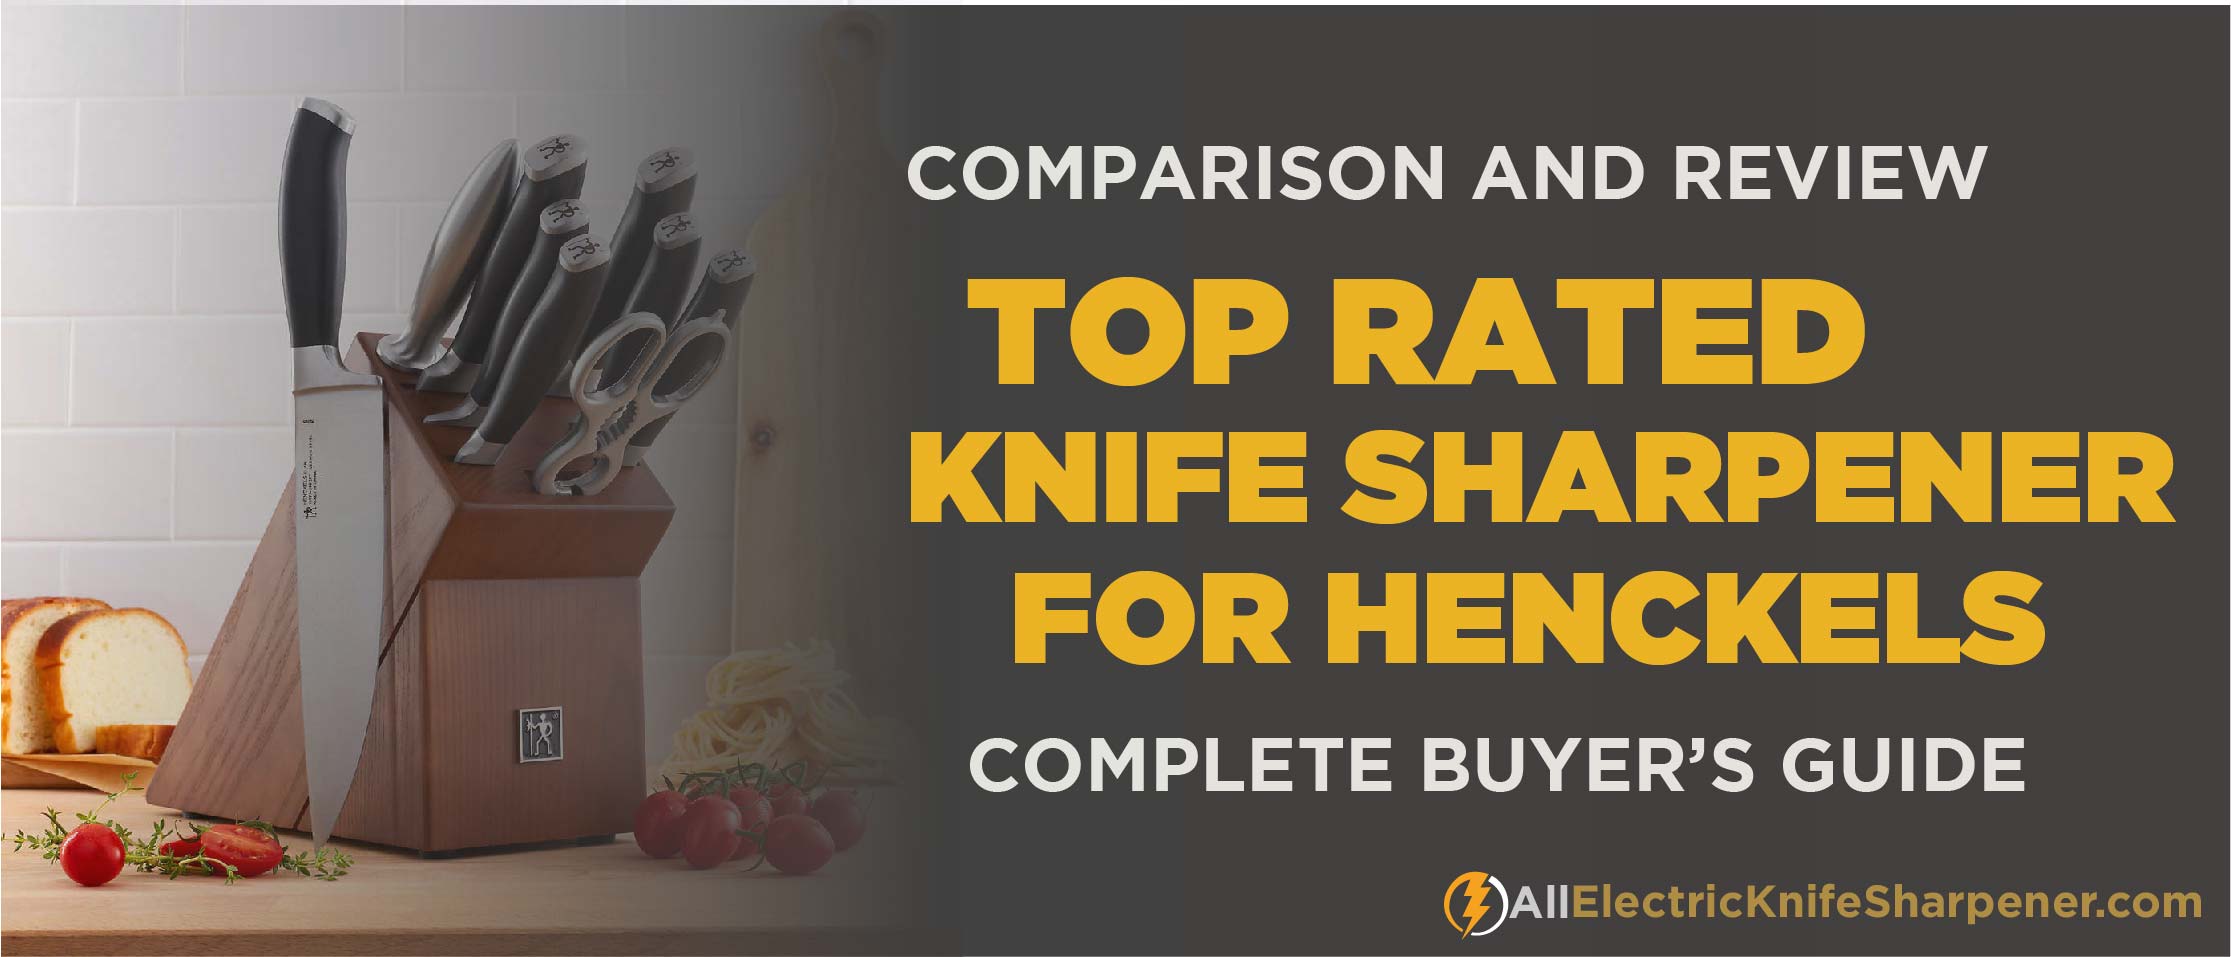 Best electric knife sharpener For Henckels 2020